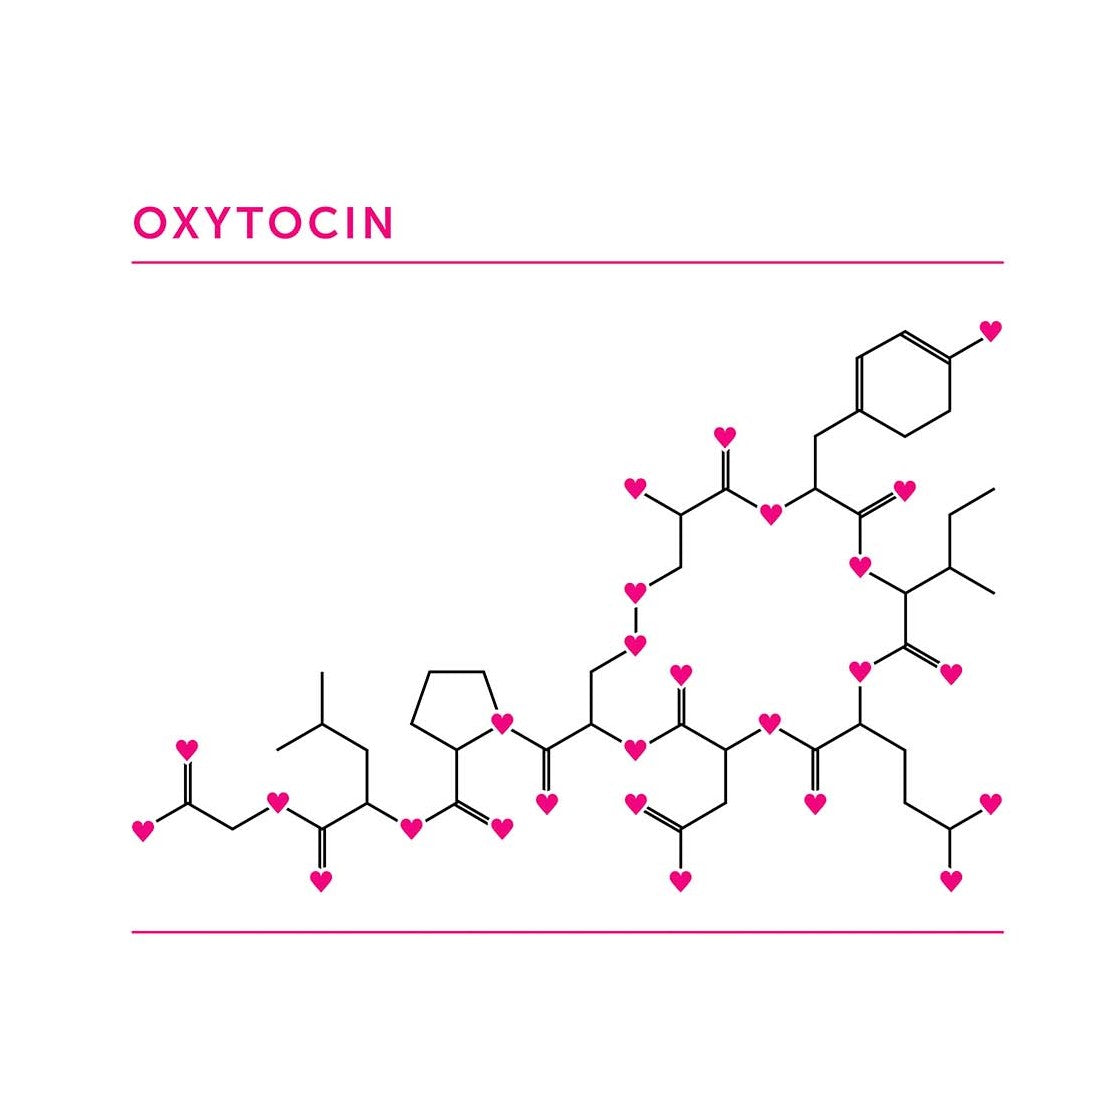 Oxytocin Mug